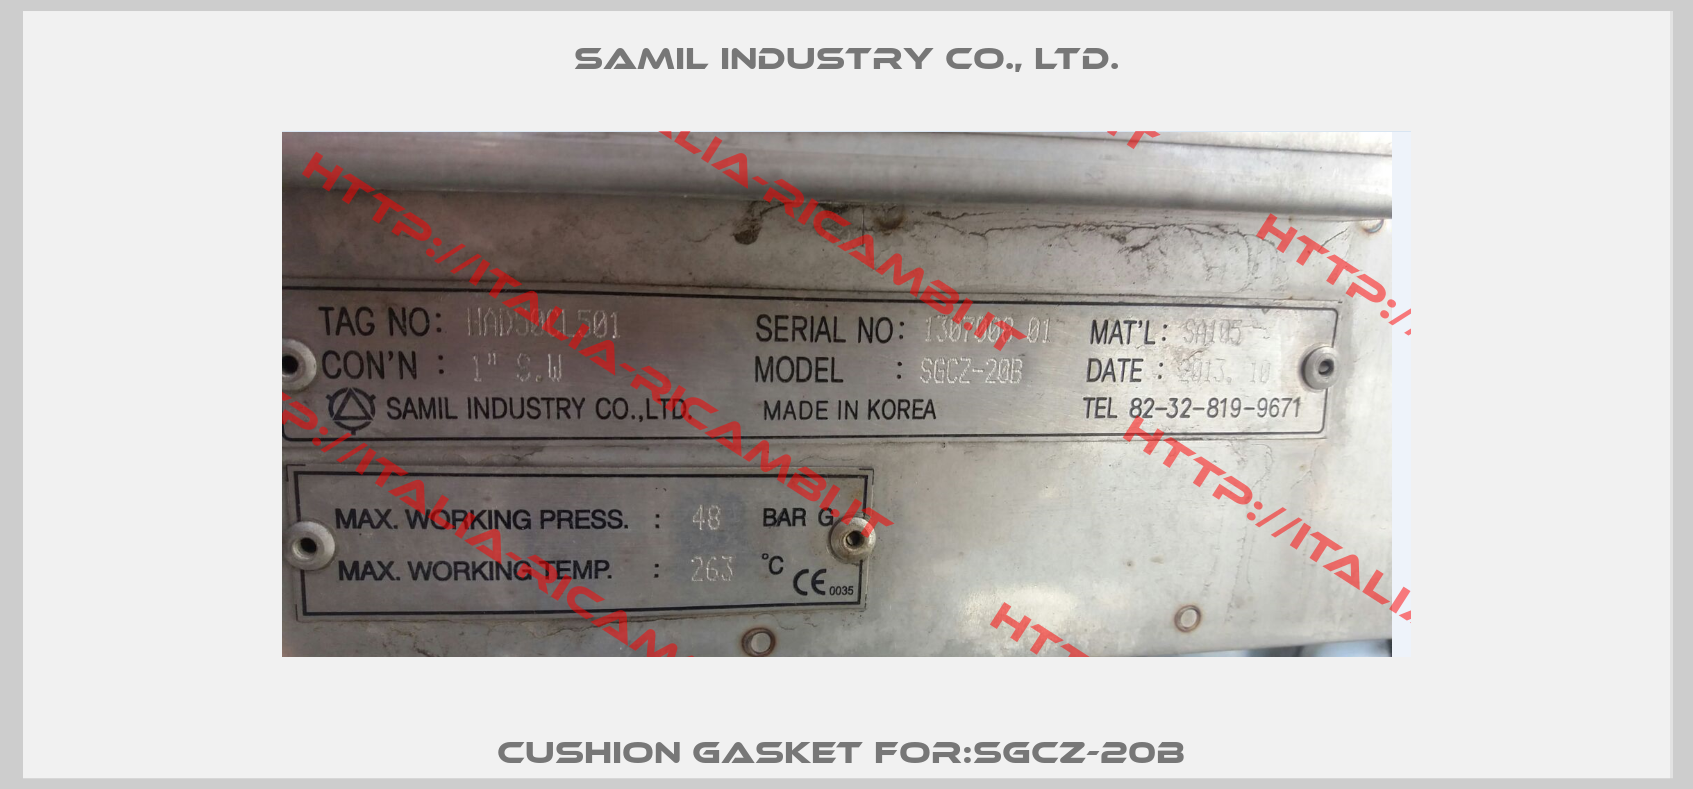 Cushion Gasket For:SGCZ-20B -0